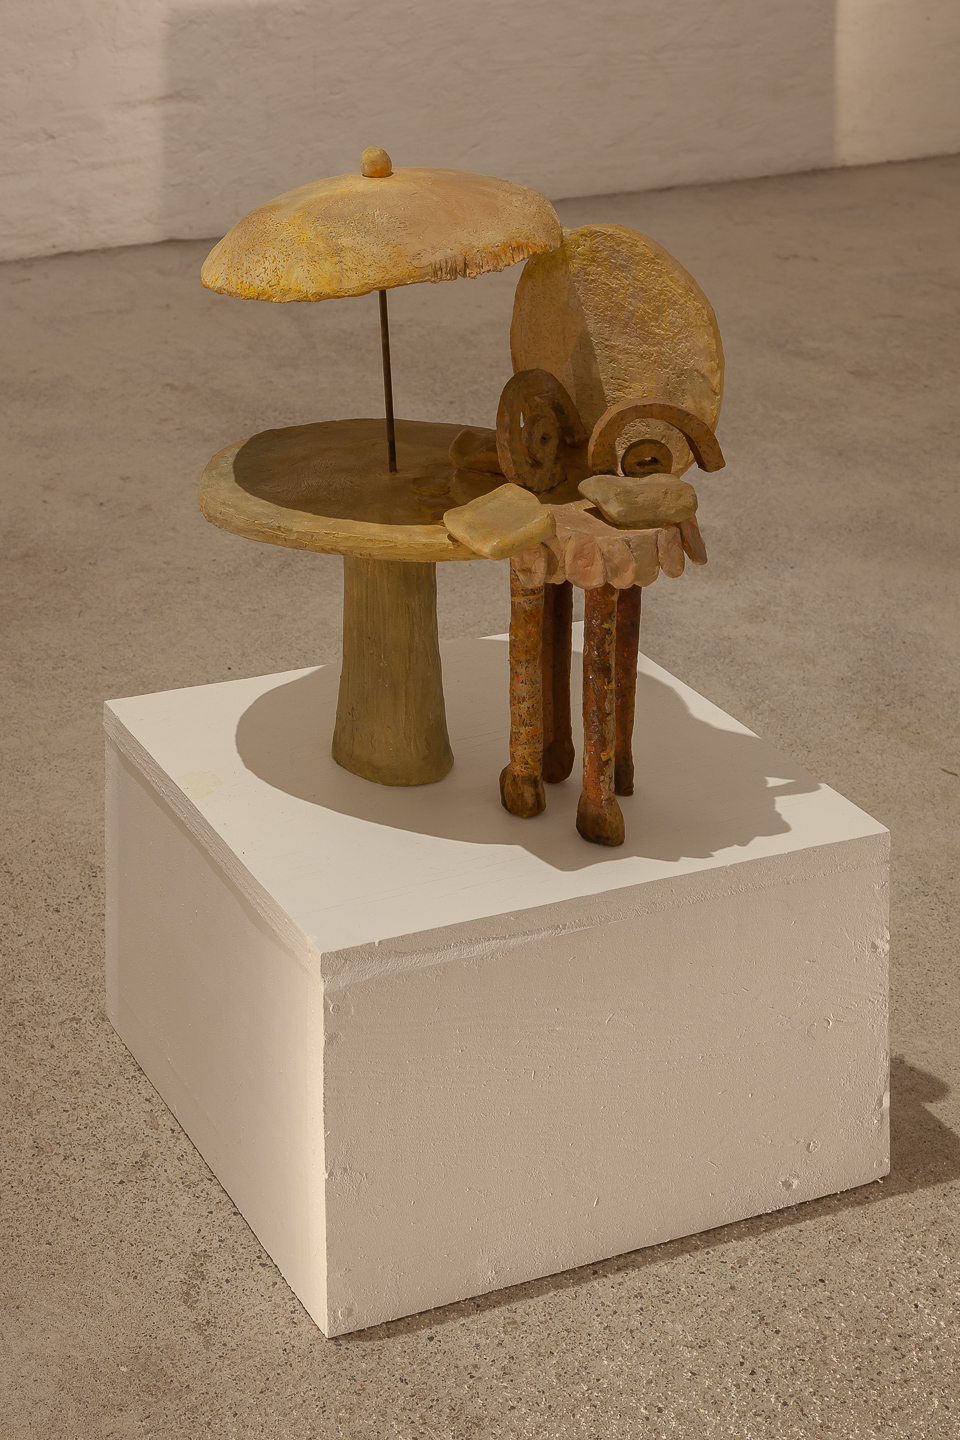 Agnès Racine, Le fauteuil paresseux, 1986, painted terra cotta, metal, 37×43×21 cm